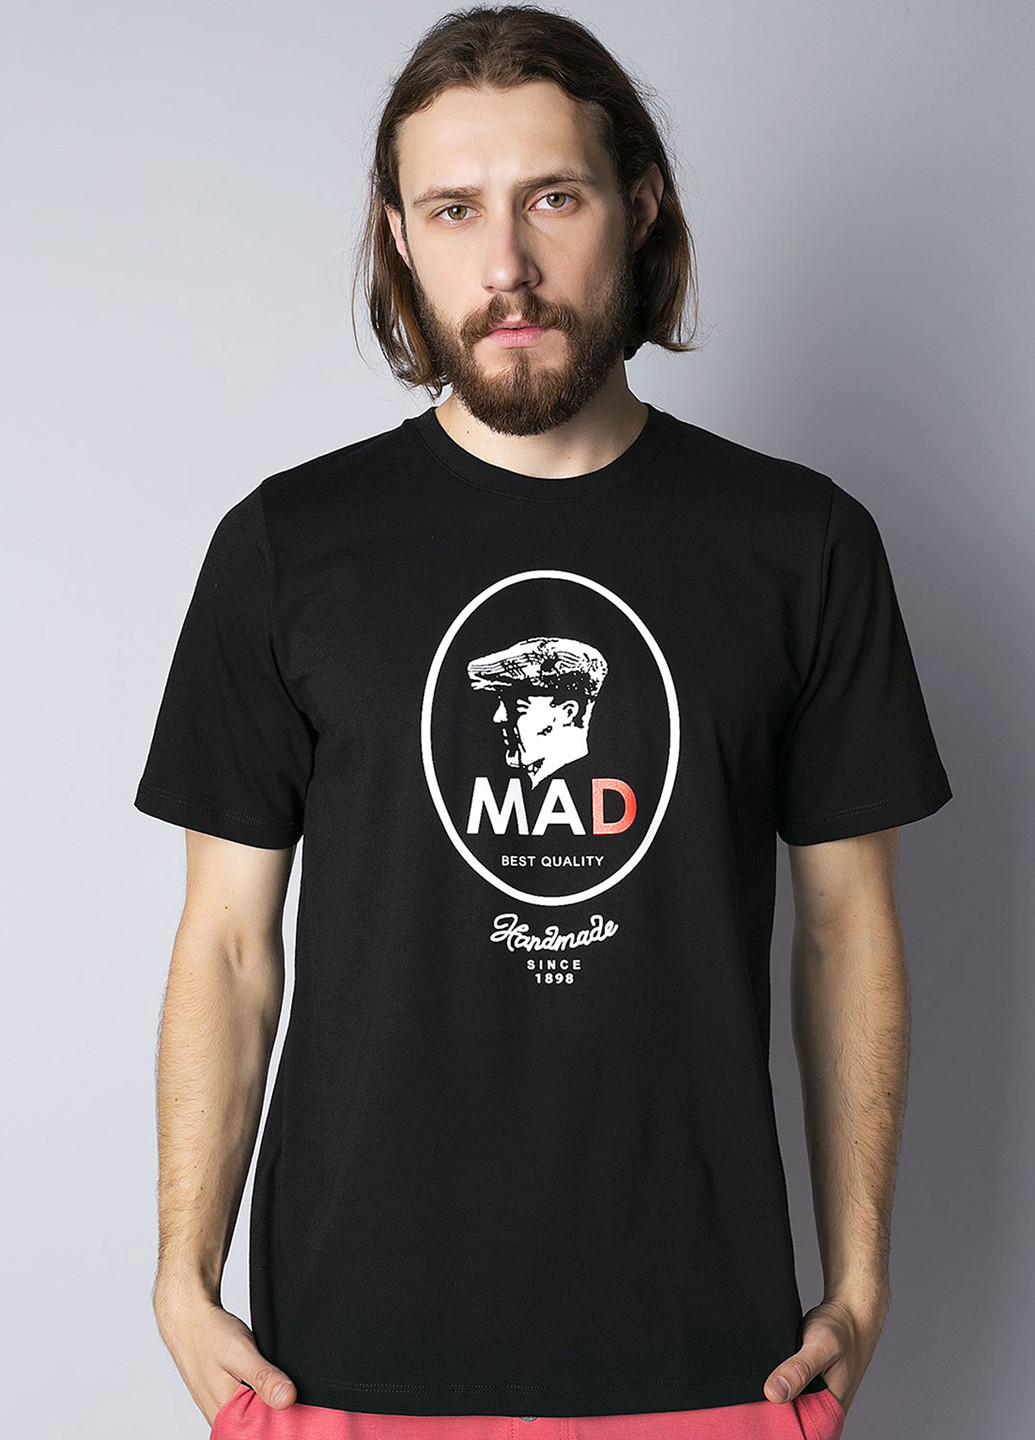 Черная футболка Homewear Mad